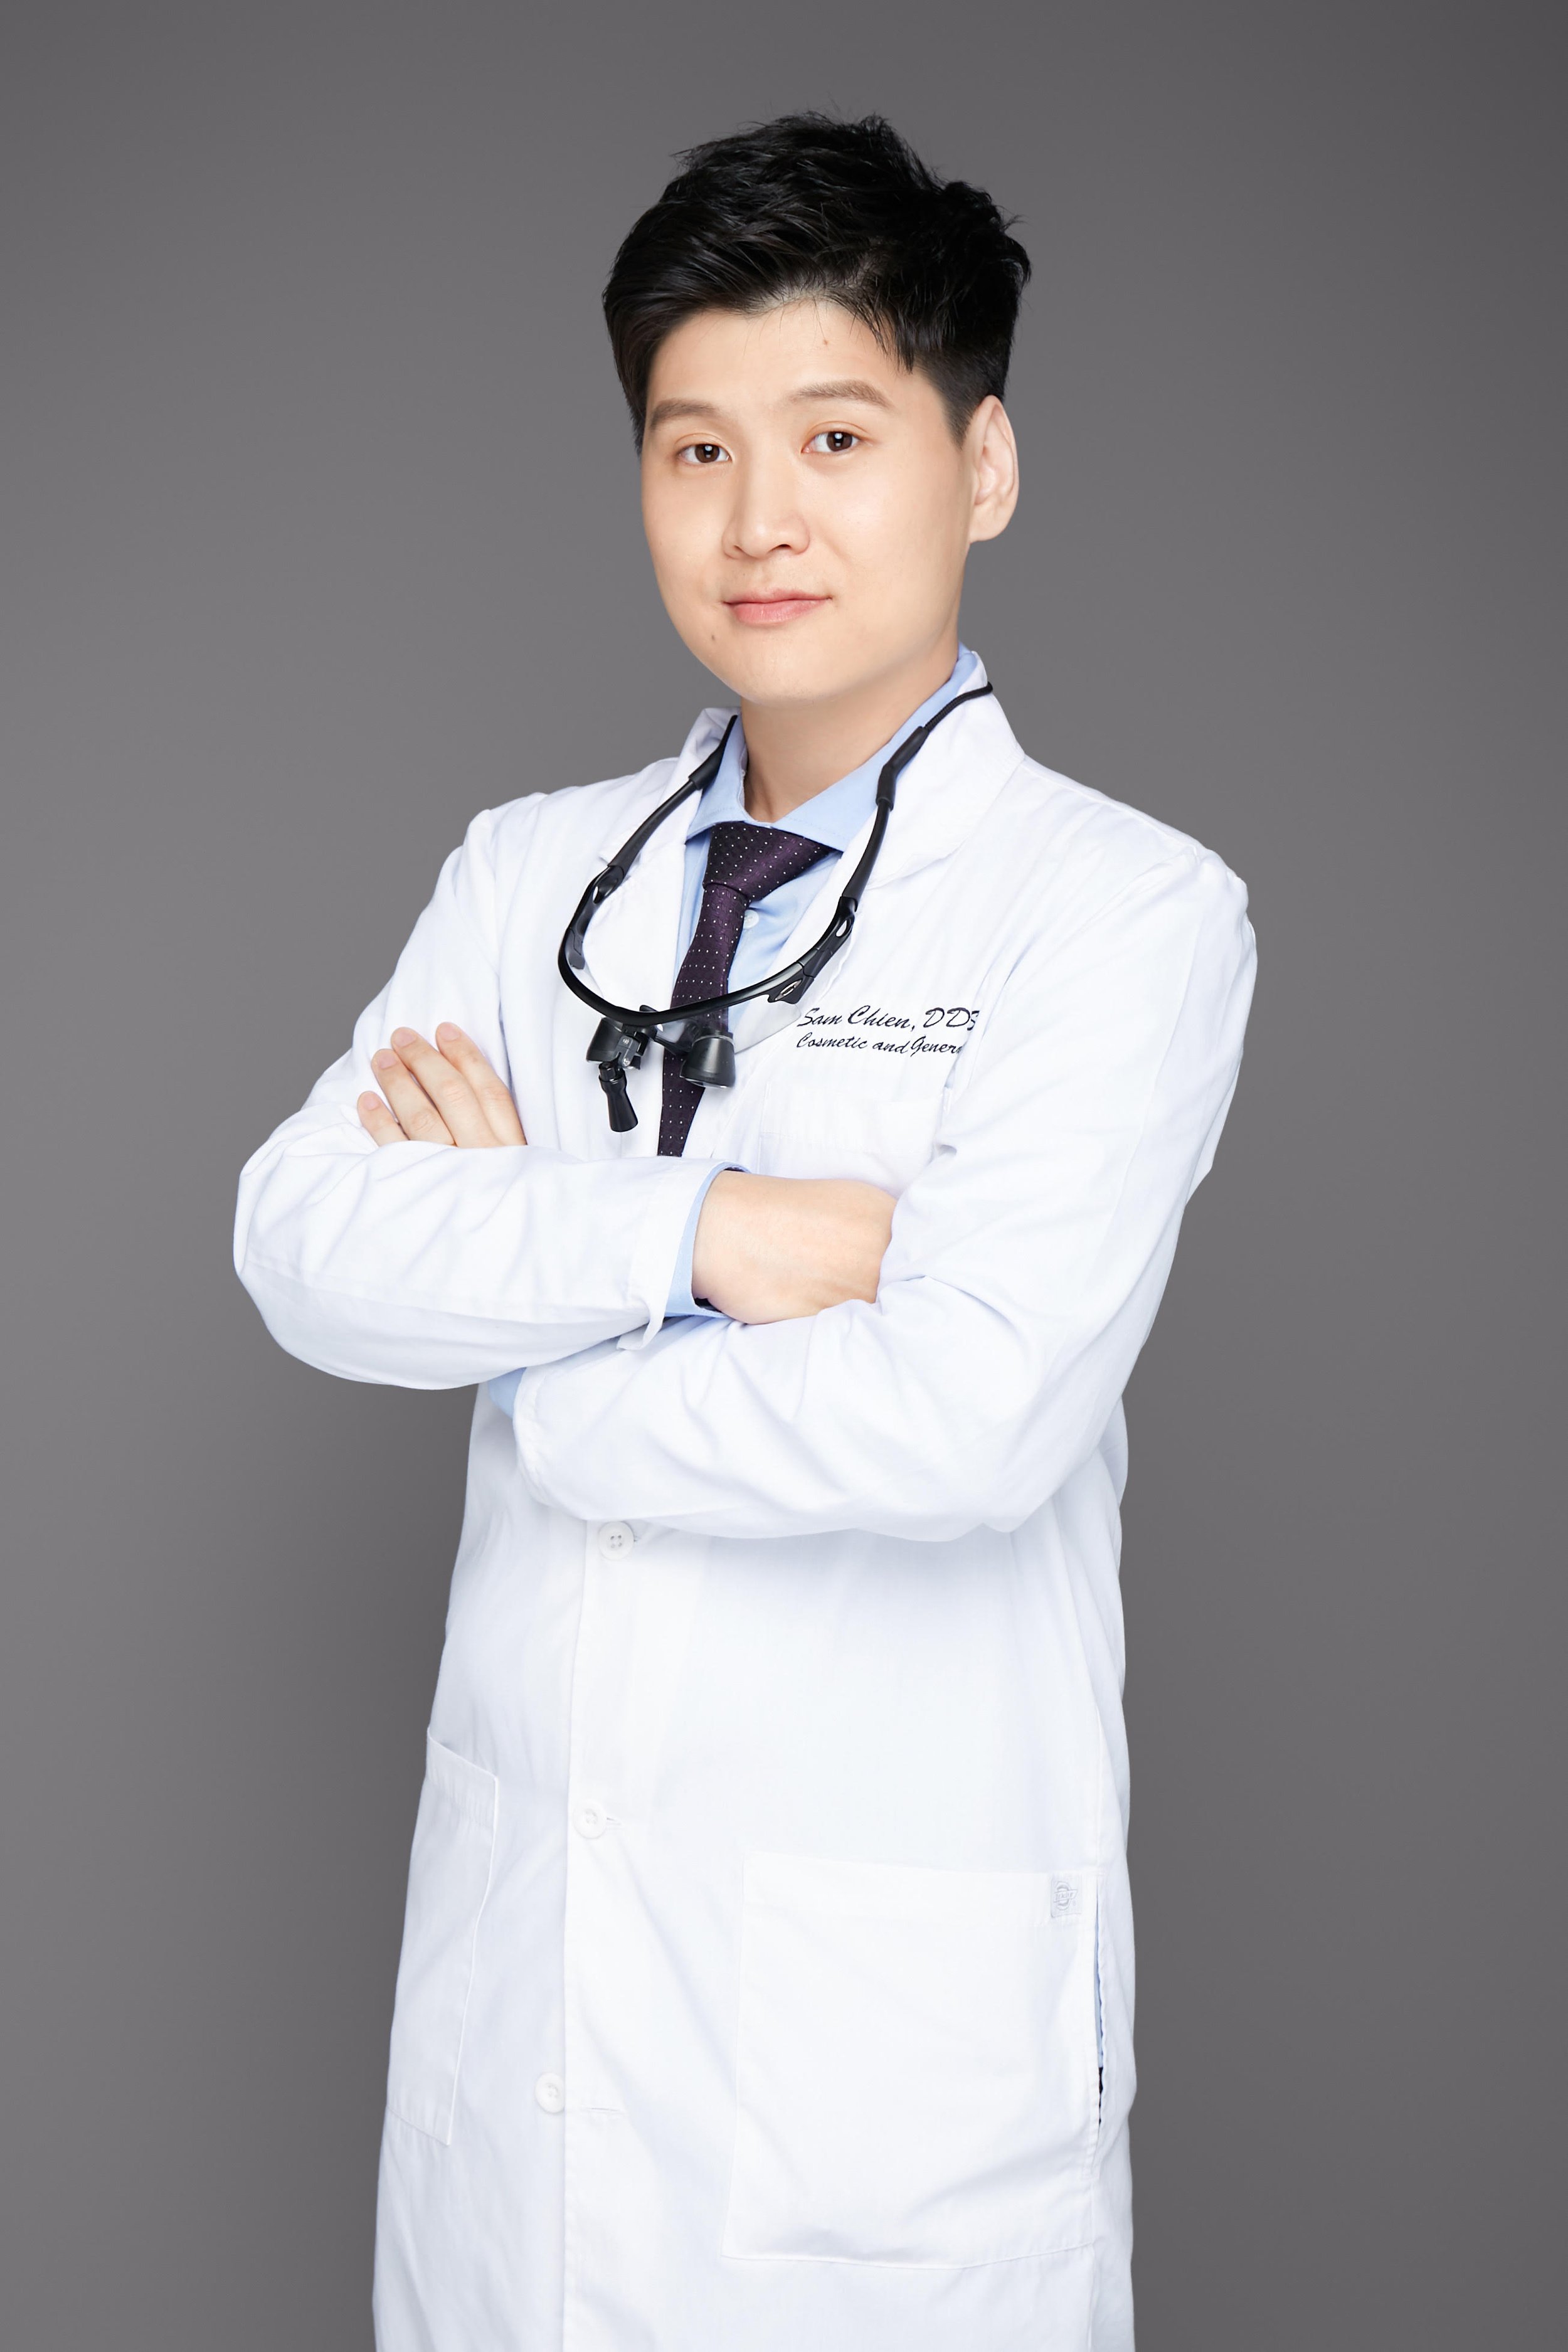 Dr. Chien